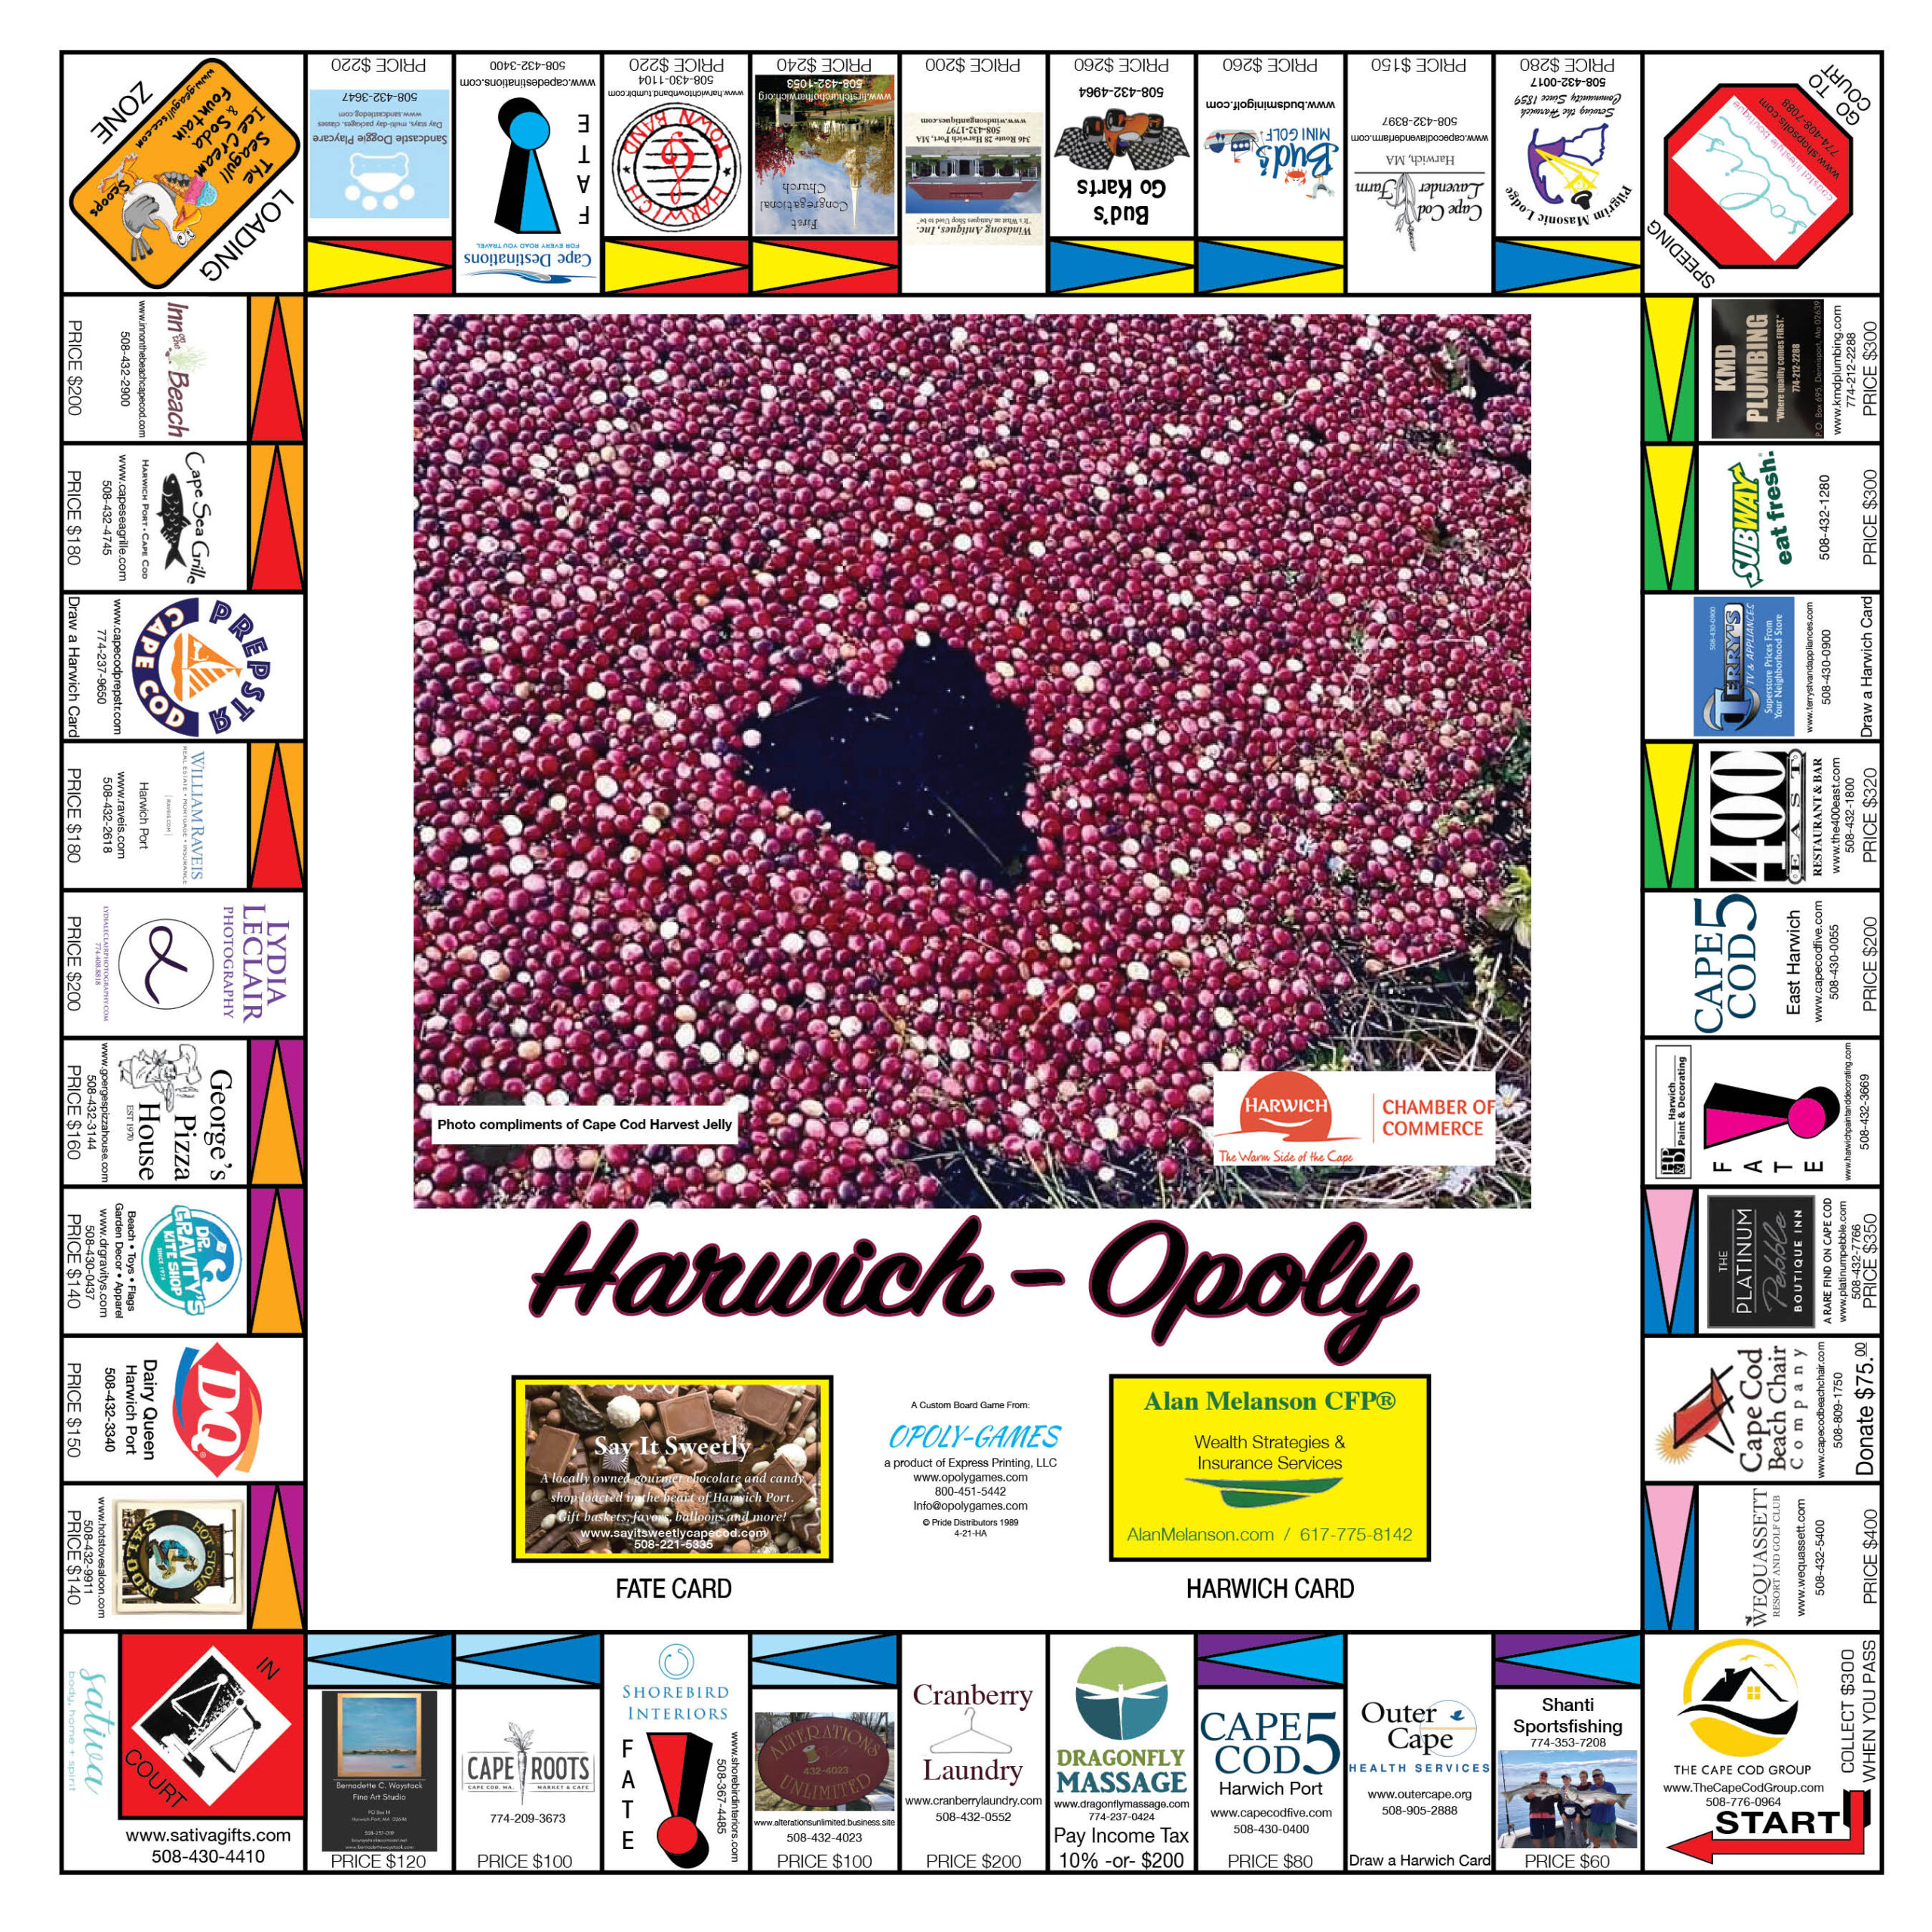 Harwichopoly board game